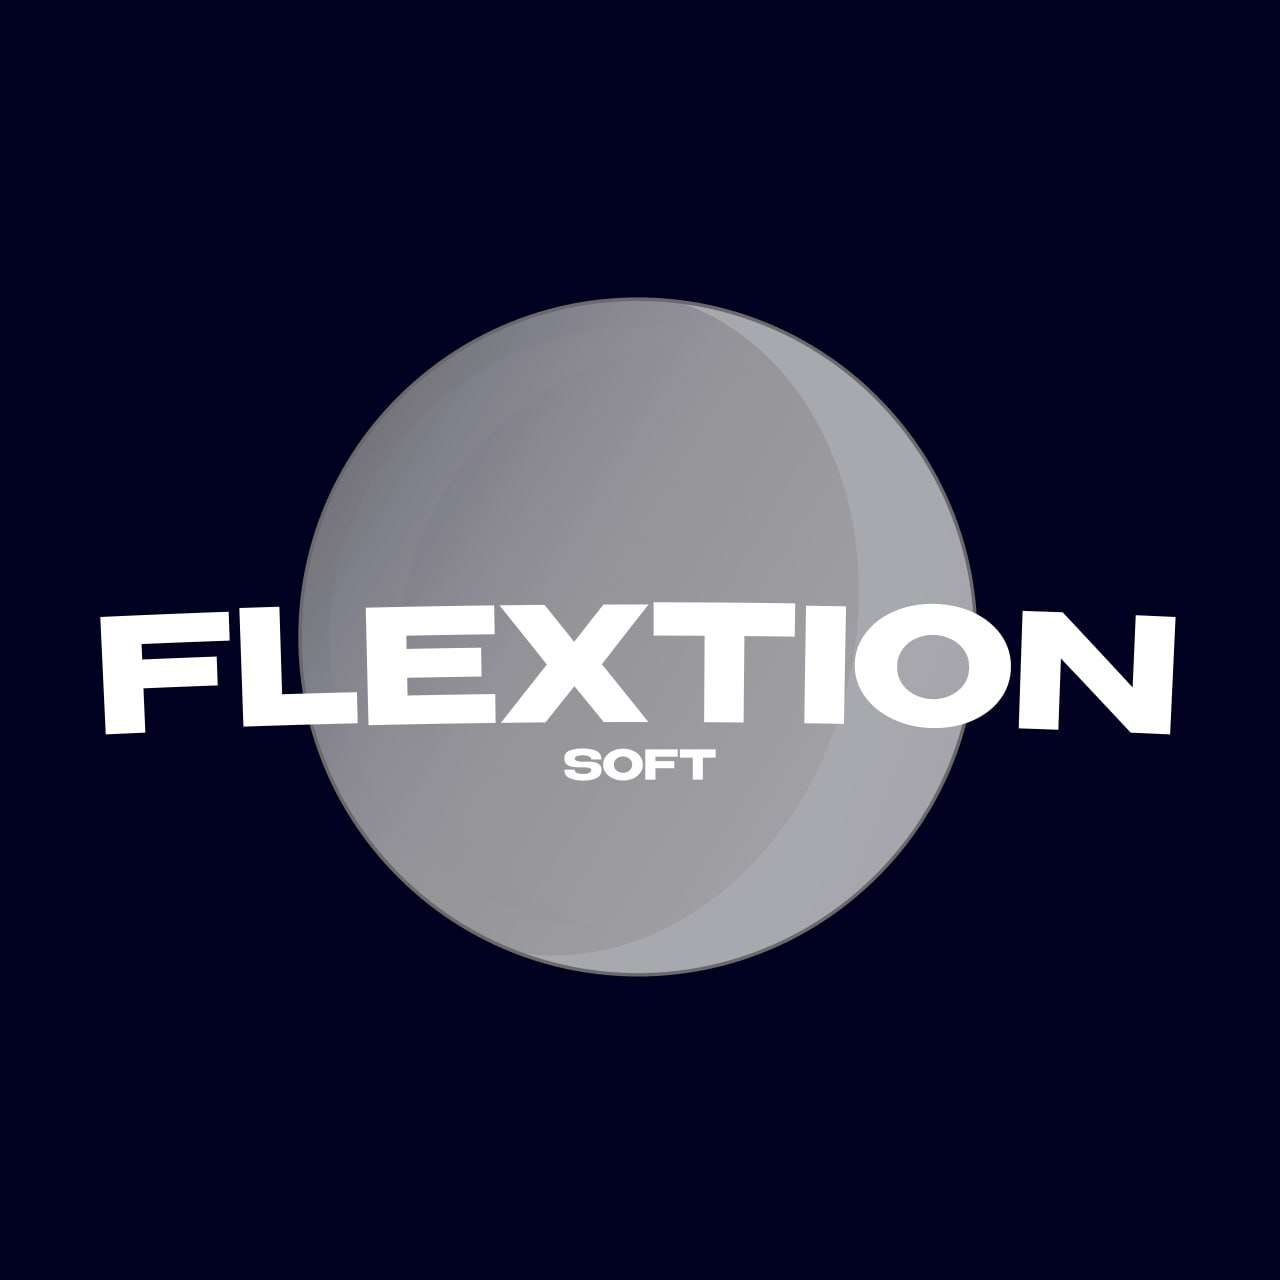 Сообщений на форуме FlextionHACKER